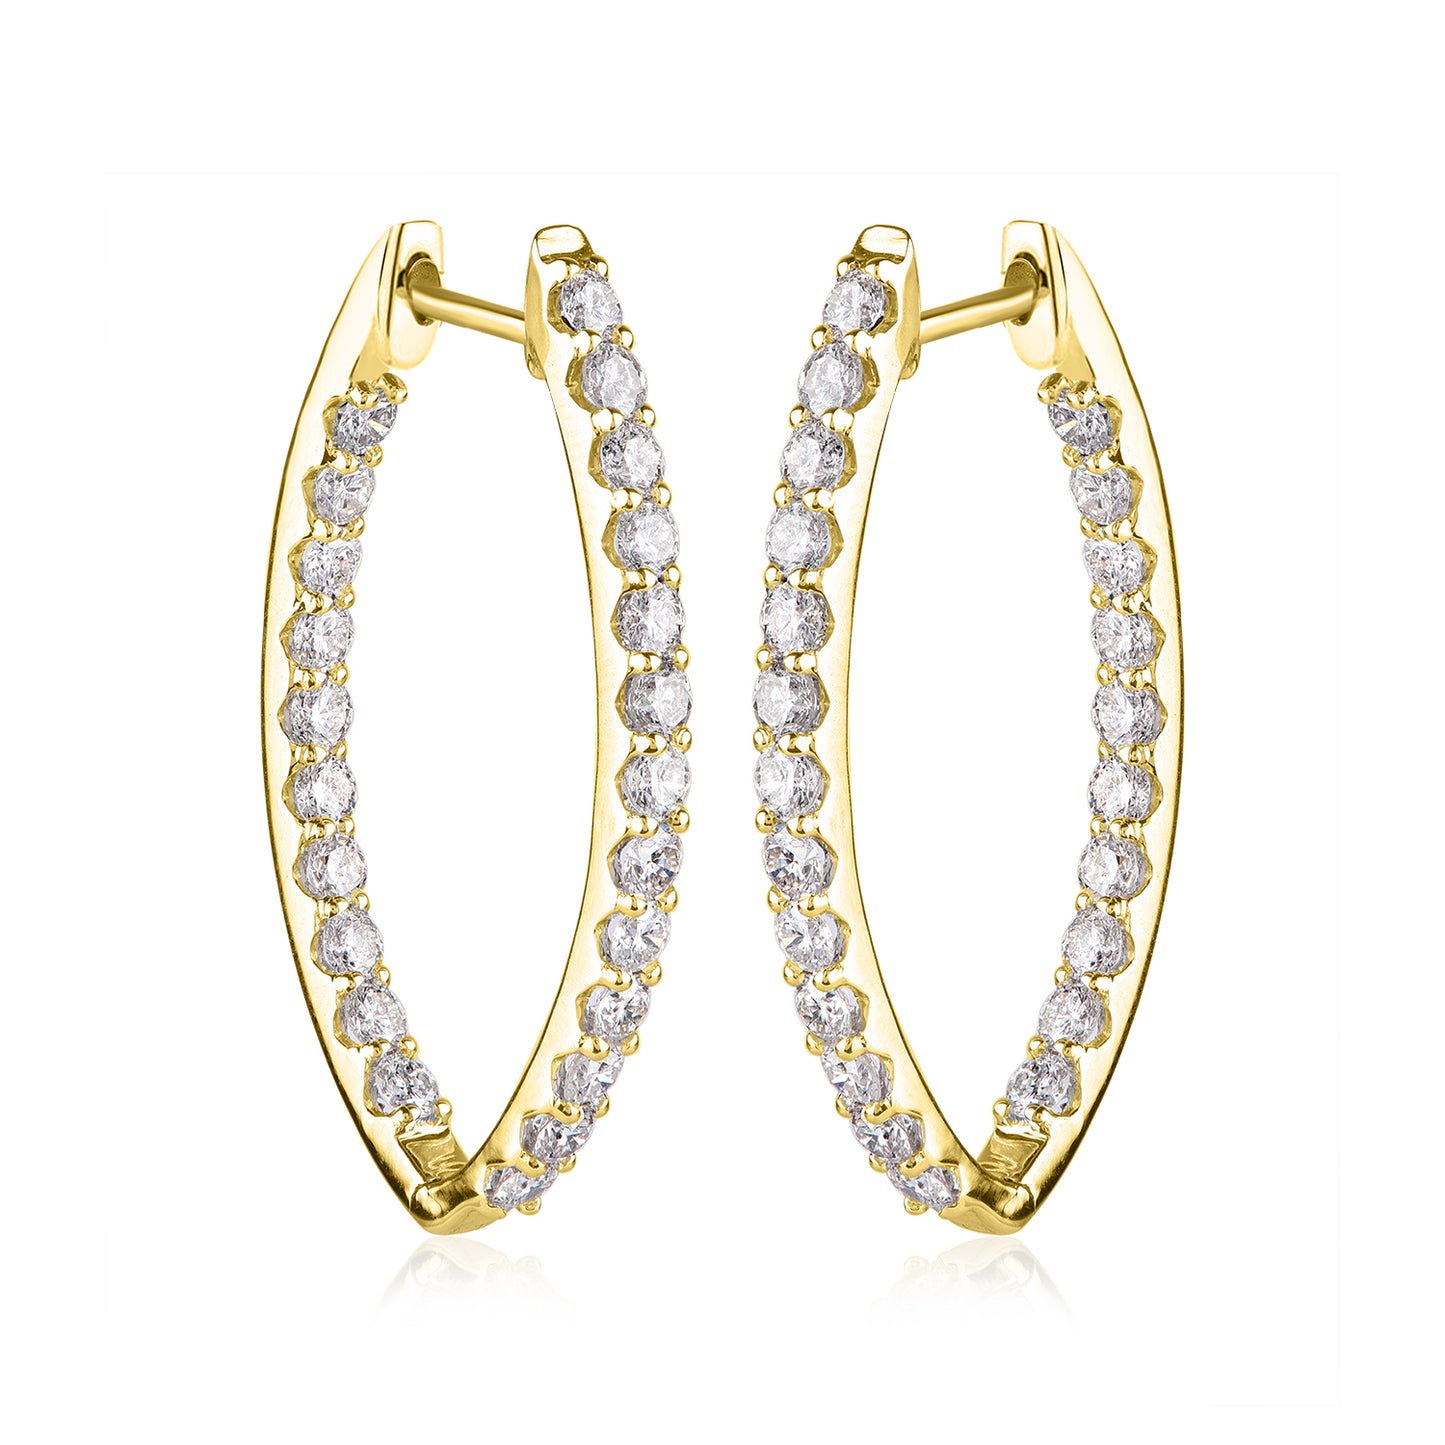 Inside-Outside Studded Wedding Hoop Earrings in 10K Gold